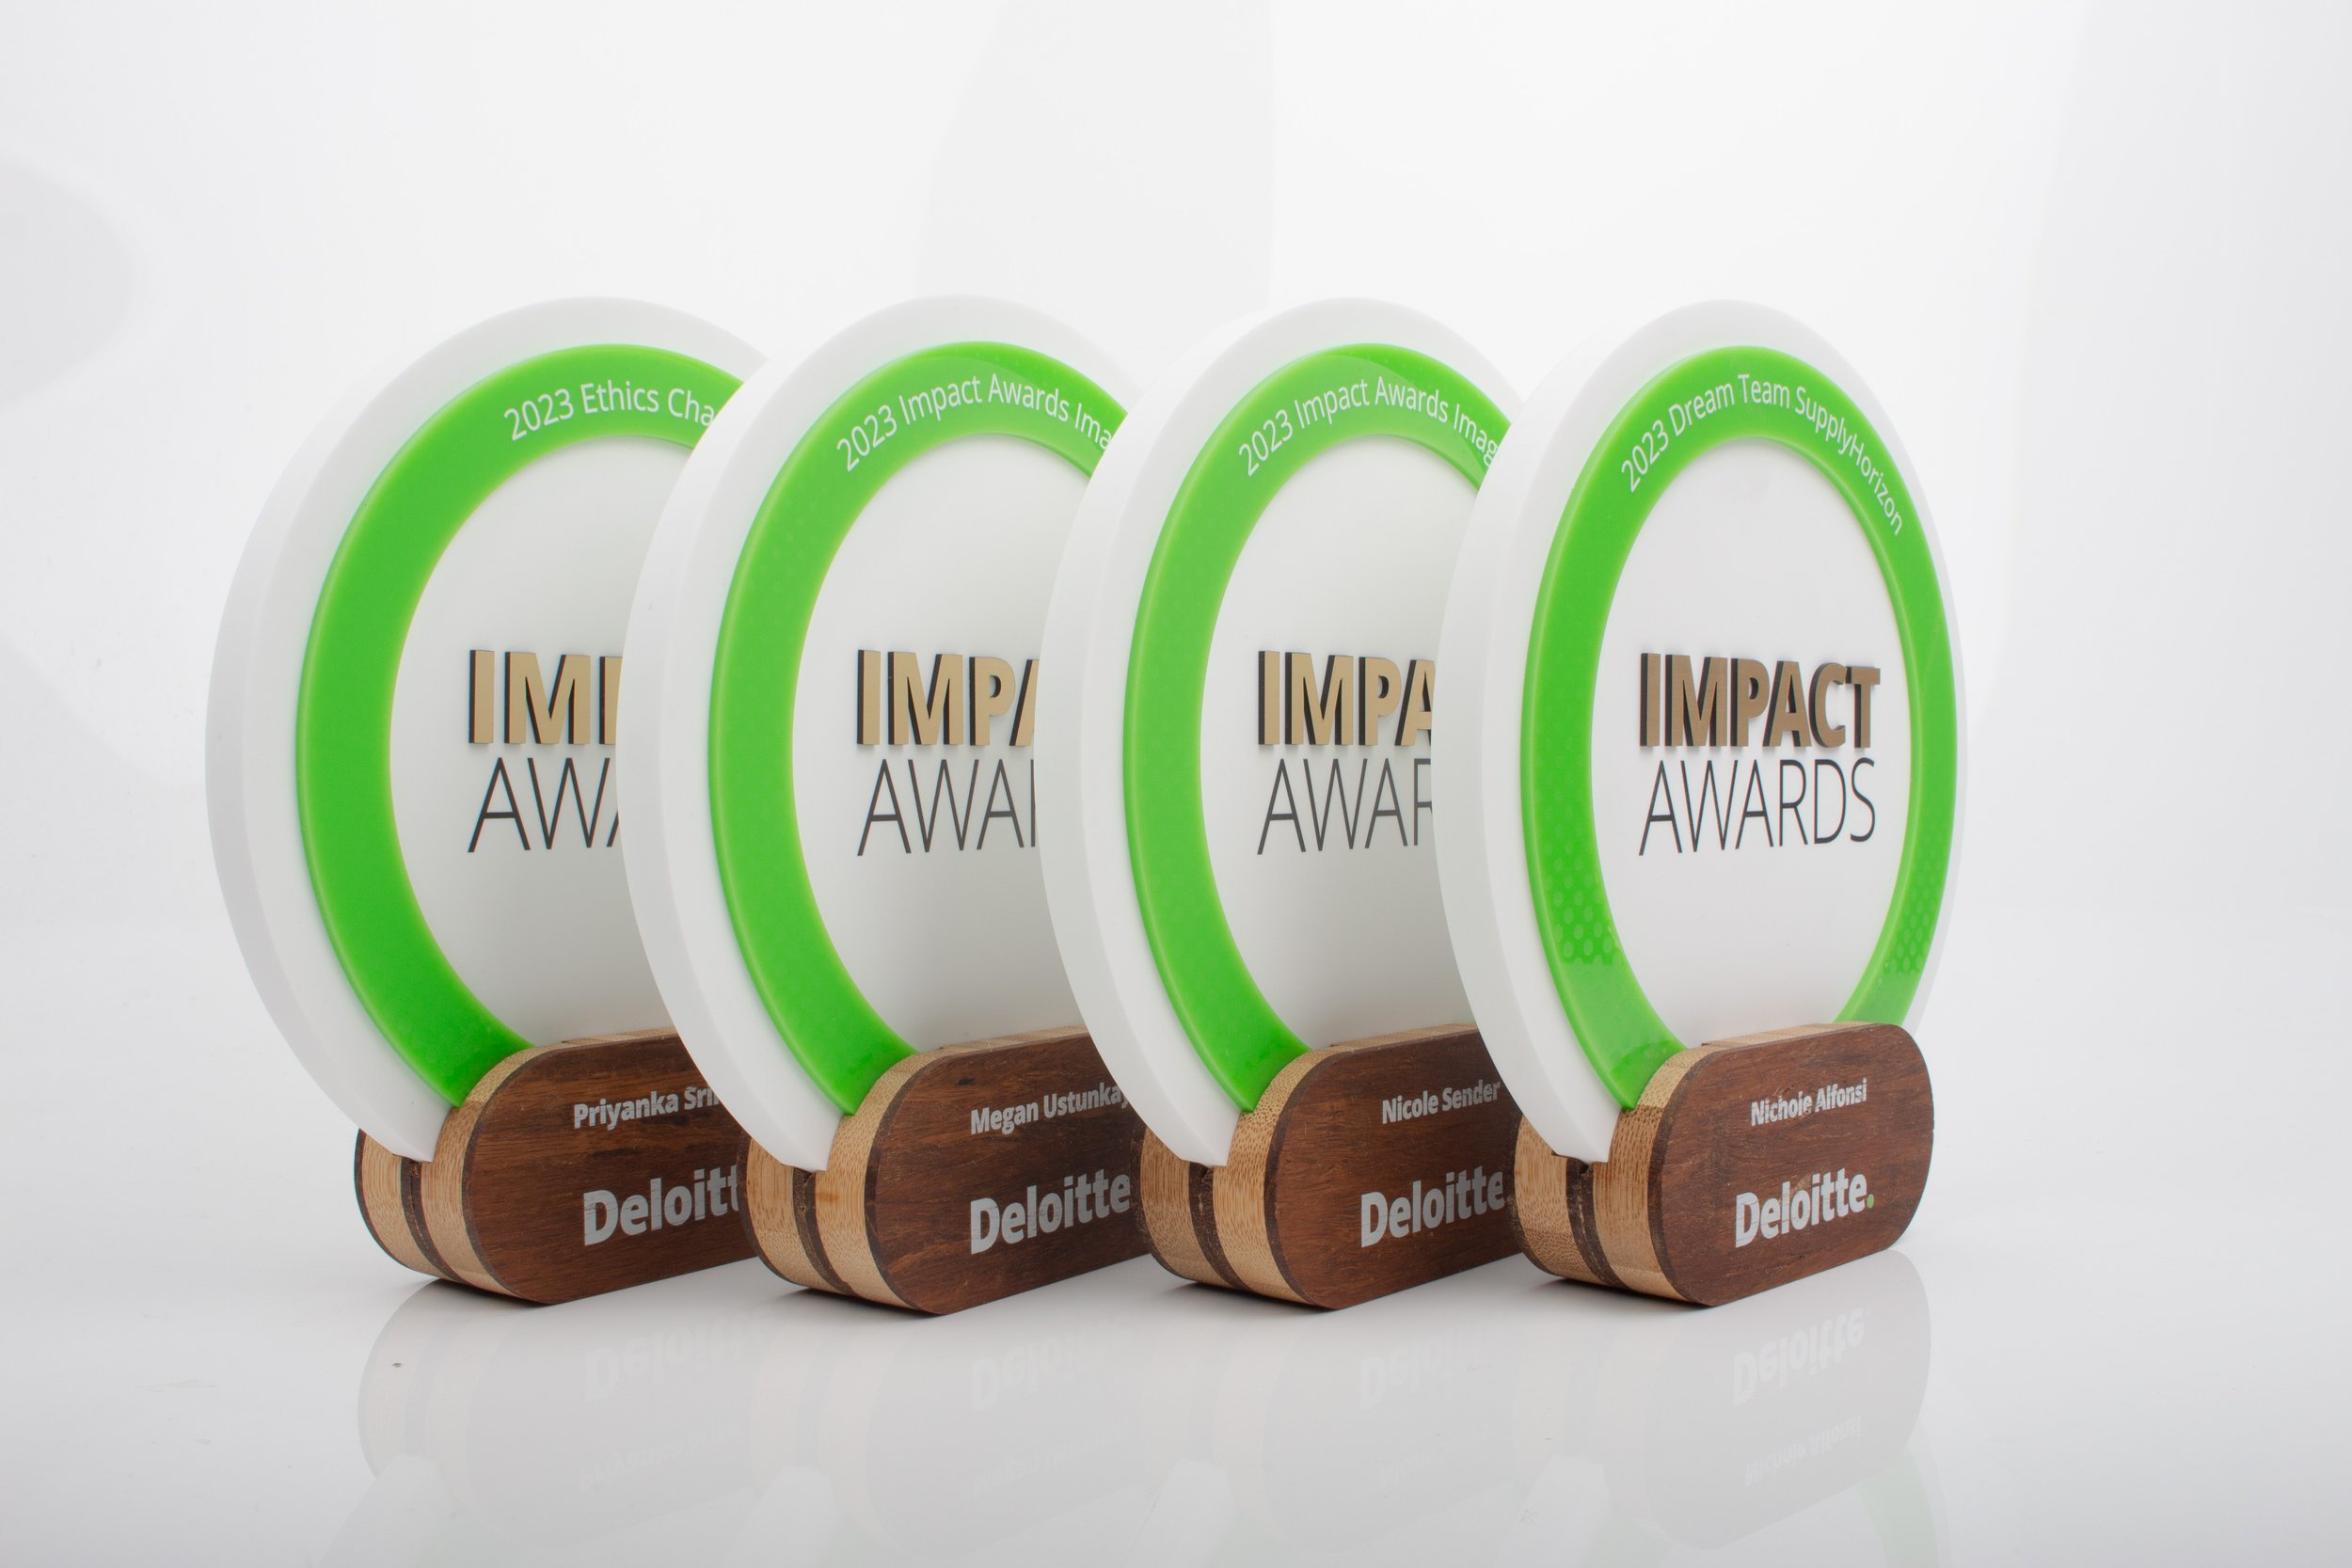 Custom Deloitte gold awards